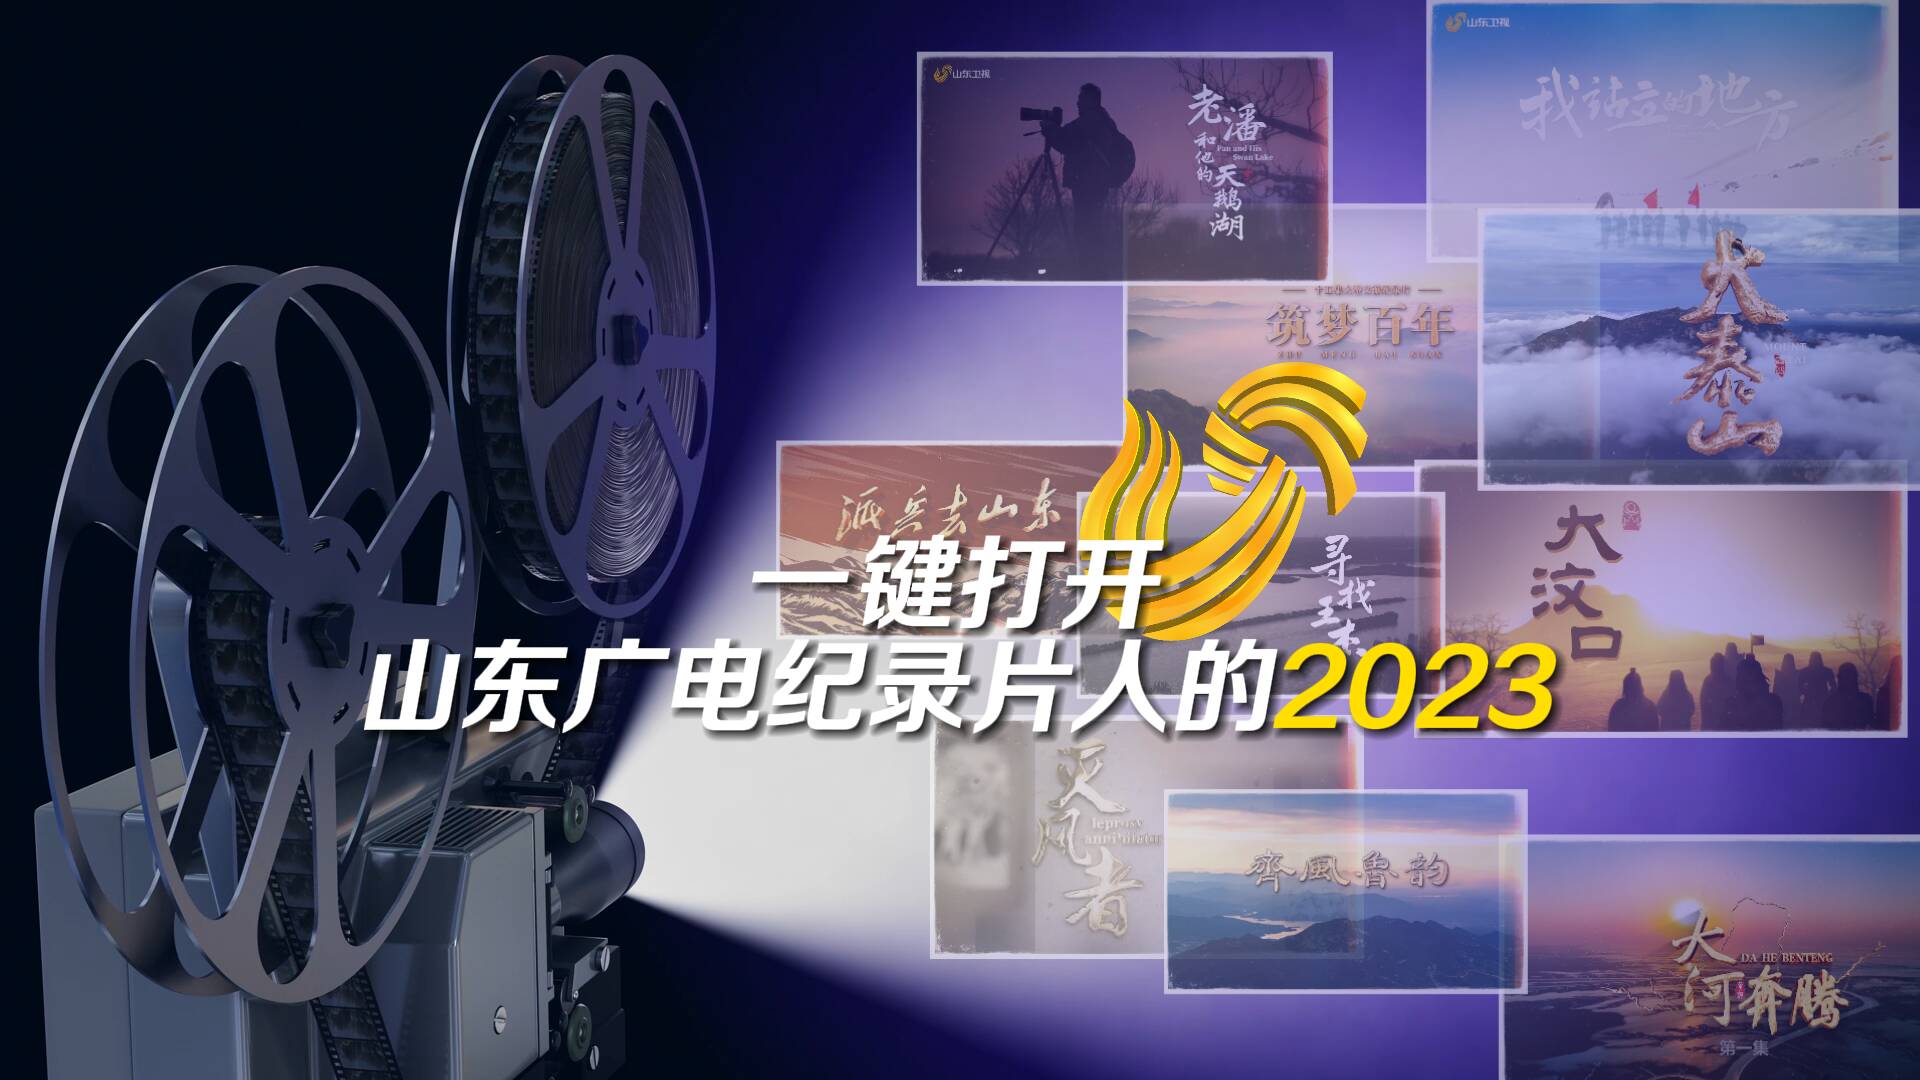 一键打开山东广电纪录片人的2023